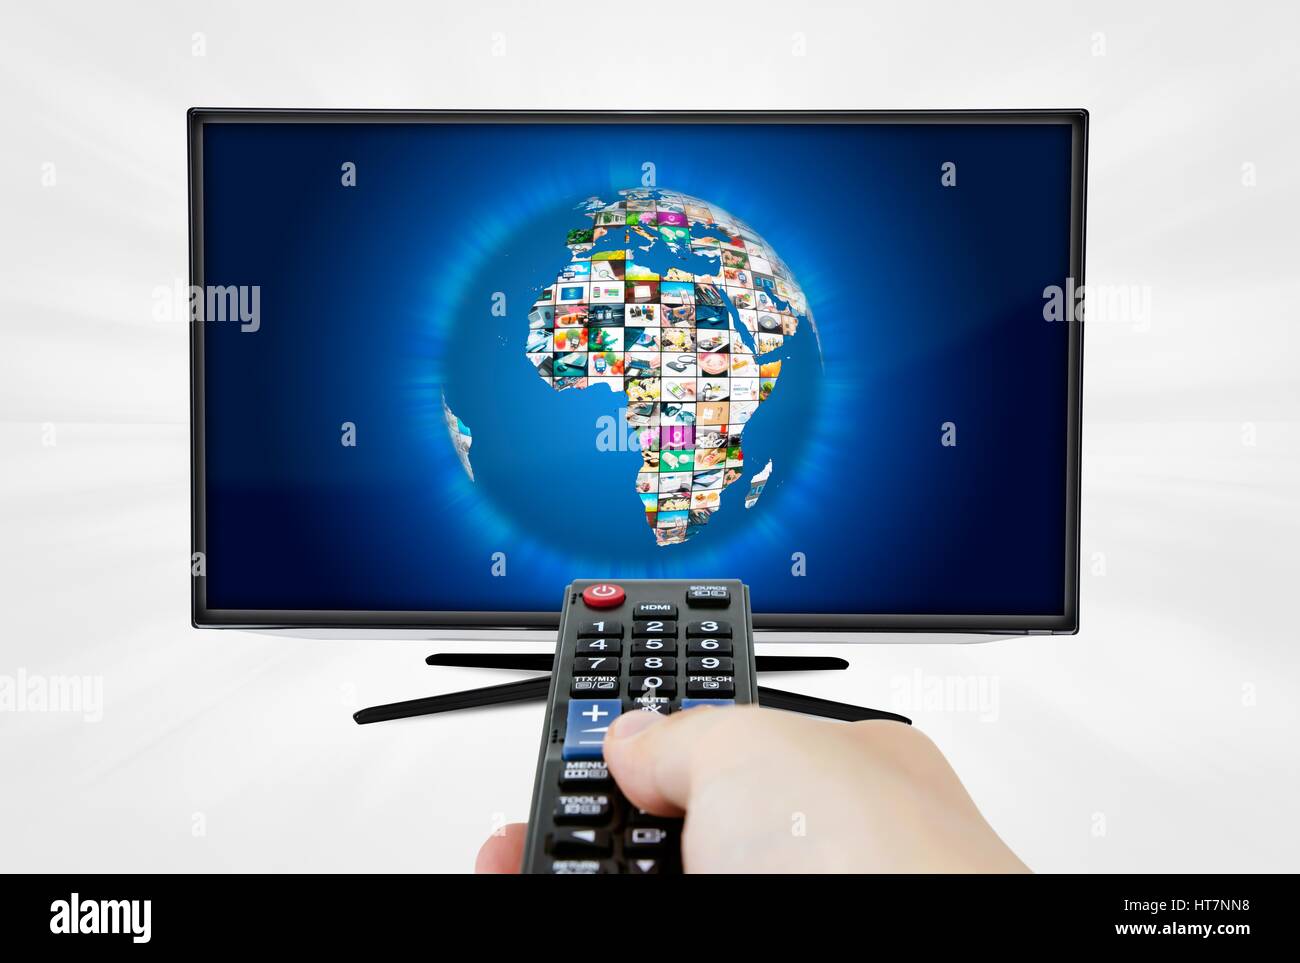 La télévision haute définition à écran large écran avec sphere galerie de vidéos. Télécommande en main Banque D'Images